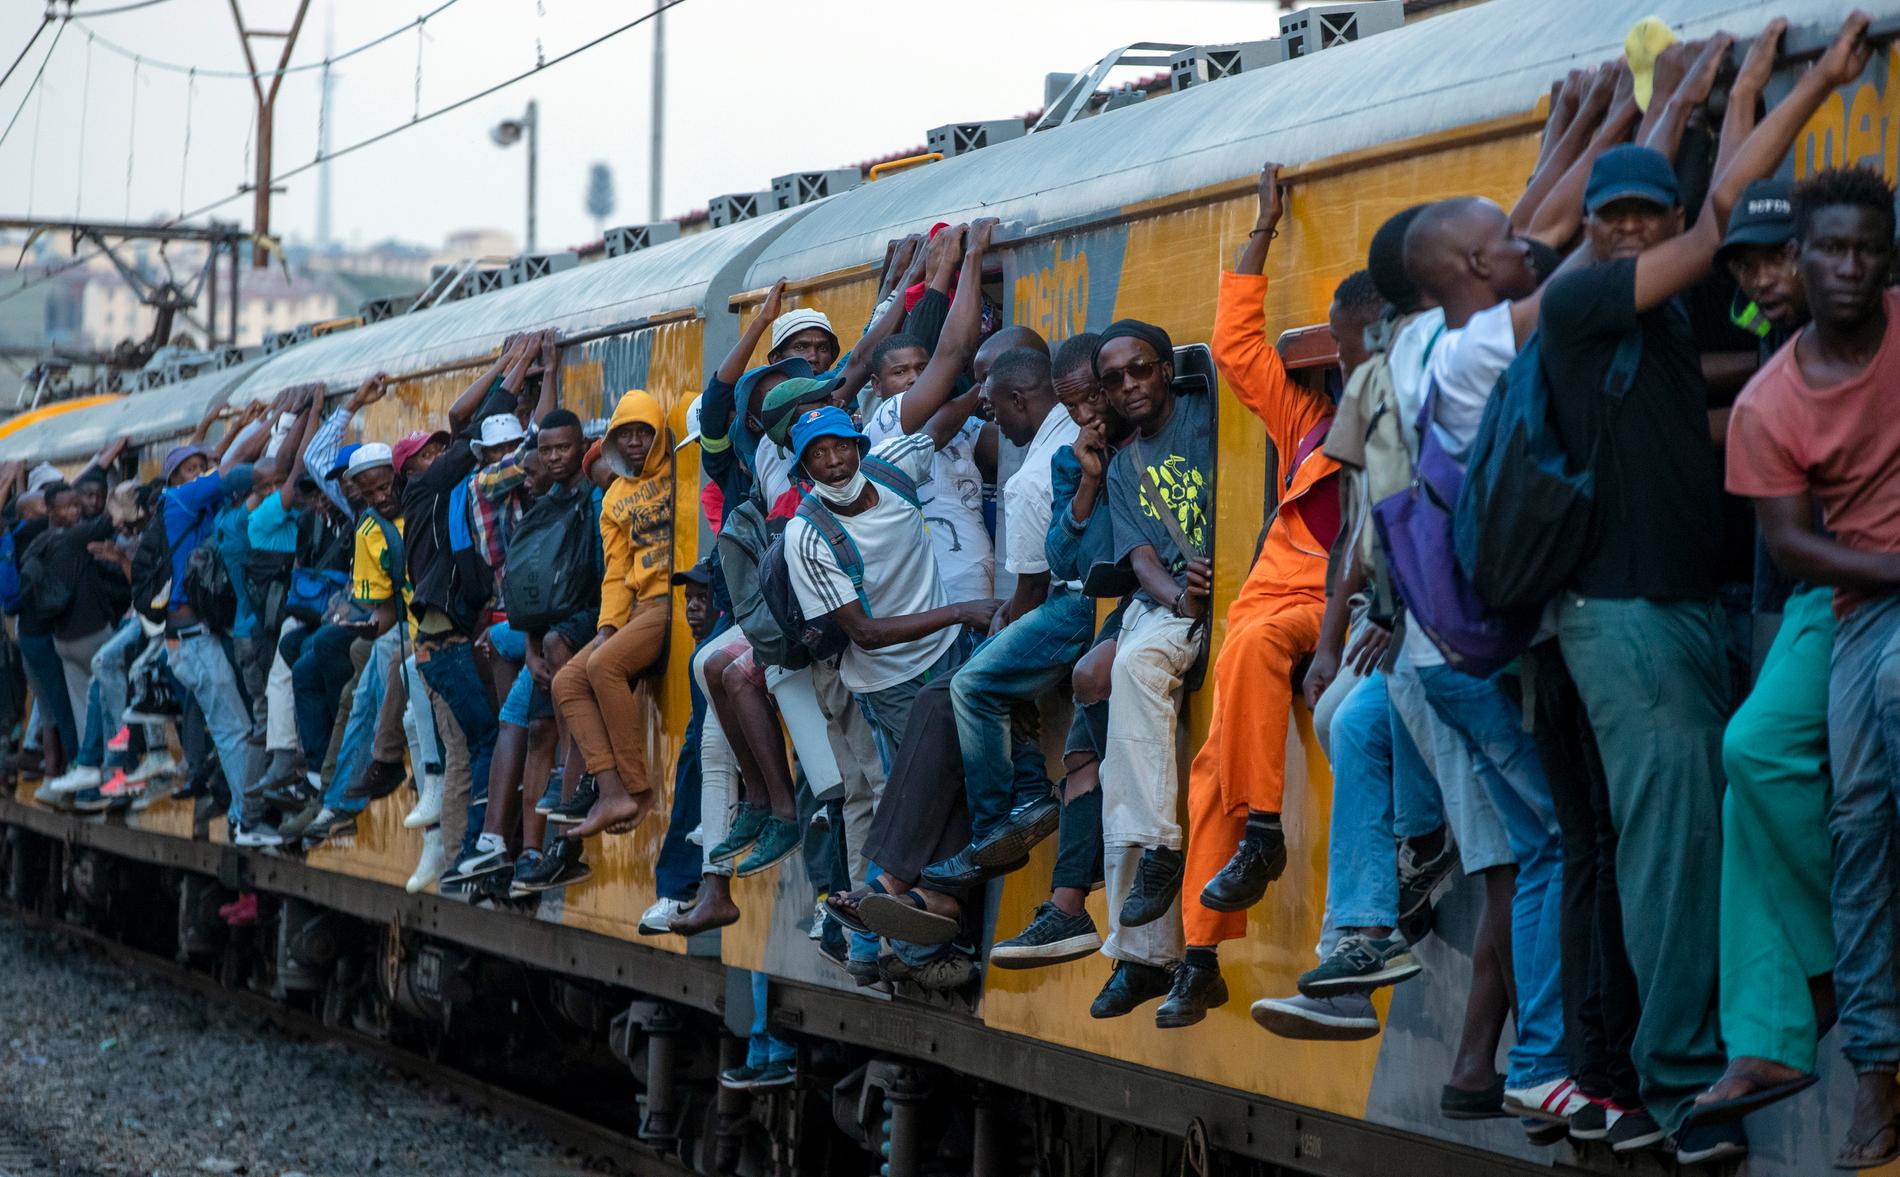 Trots viruslarm är tåget i sydafrikanska Soweto är som vanligt överfullt. I ekonomiskt utsatta områden har människor inte råd att sluta arbeta även om det kan minska smittspridningen, varnar hjälporganisationer.